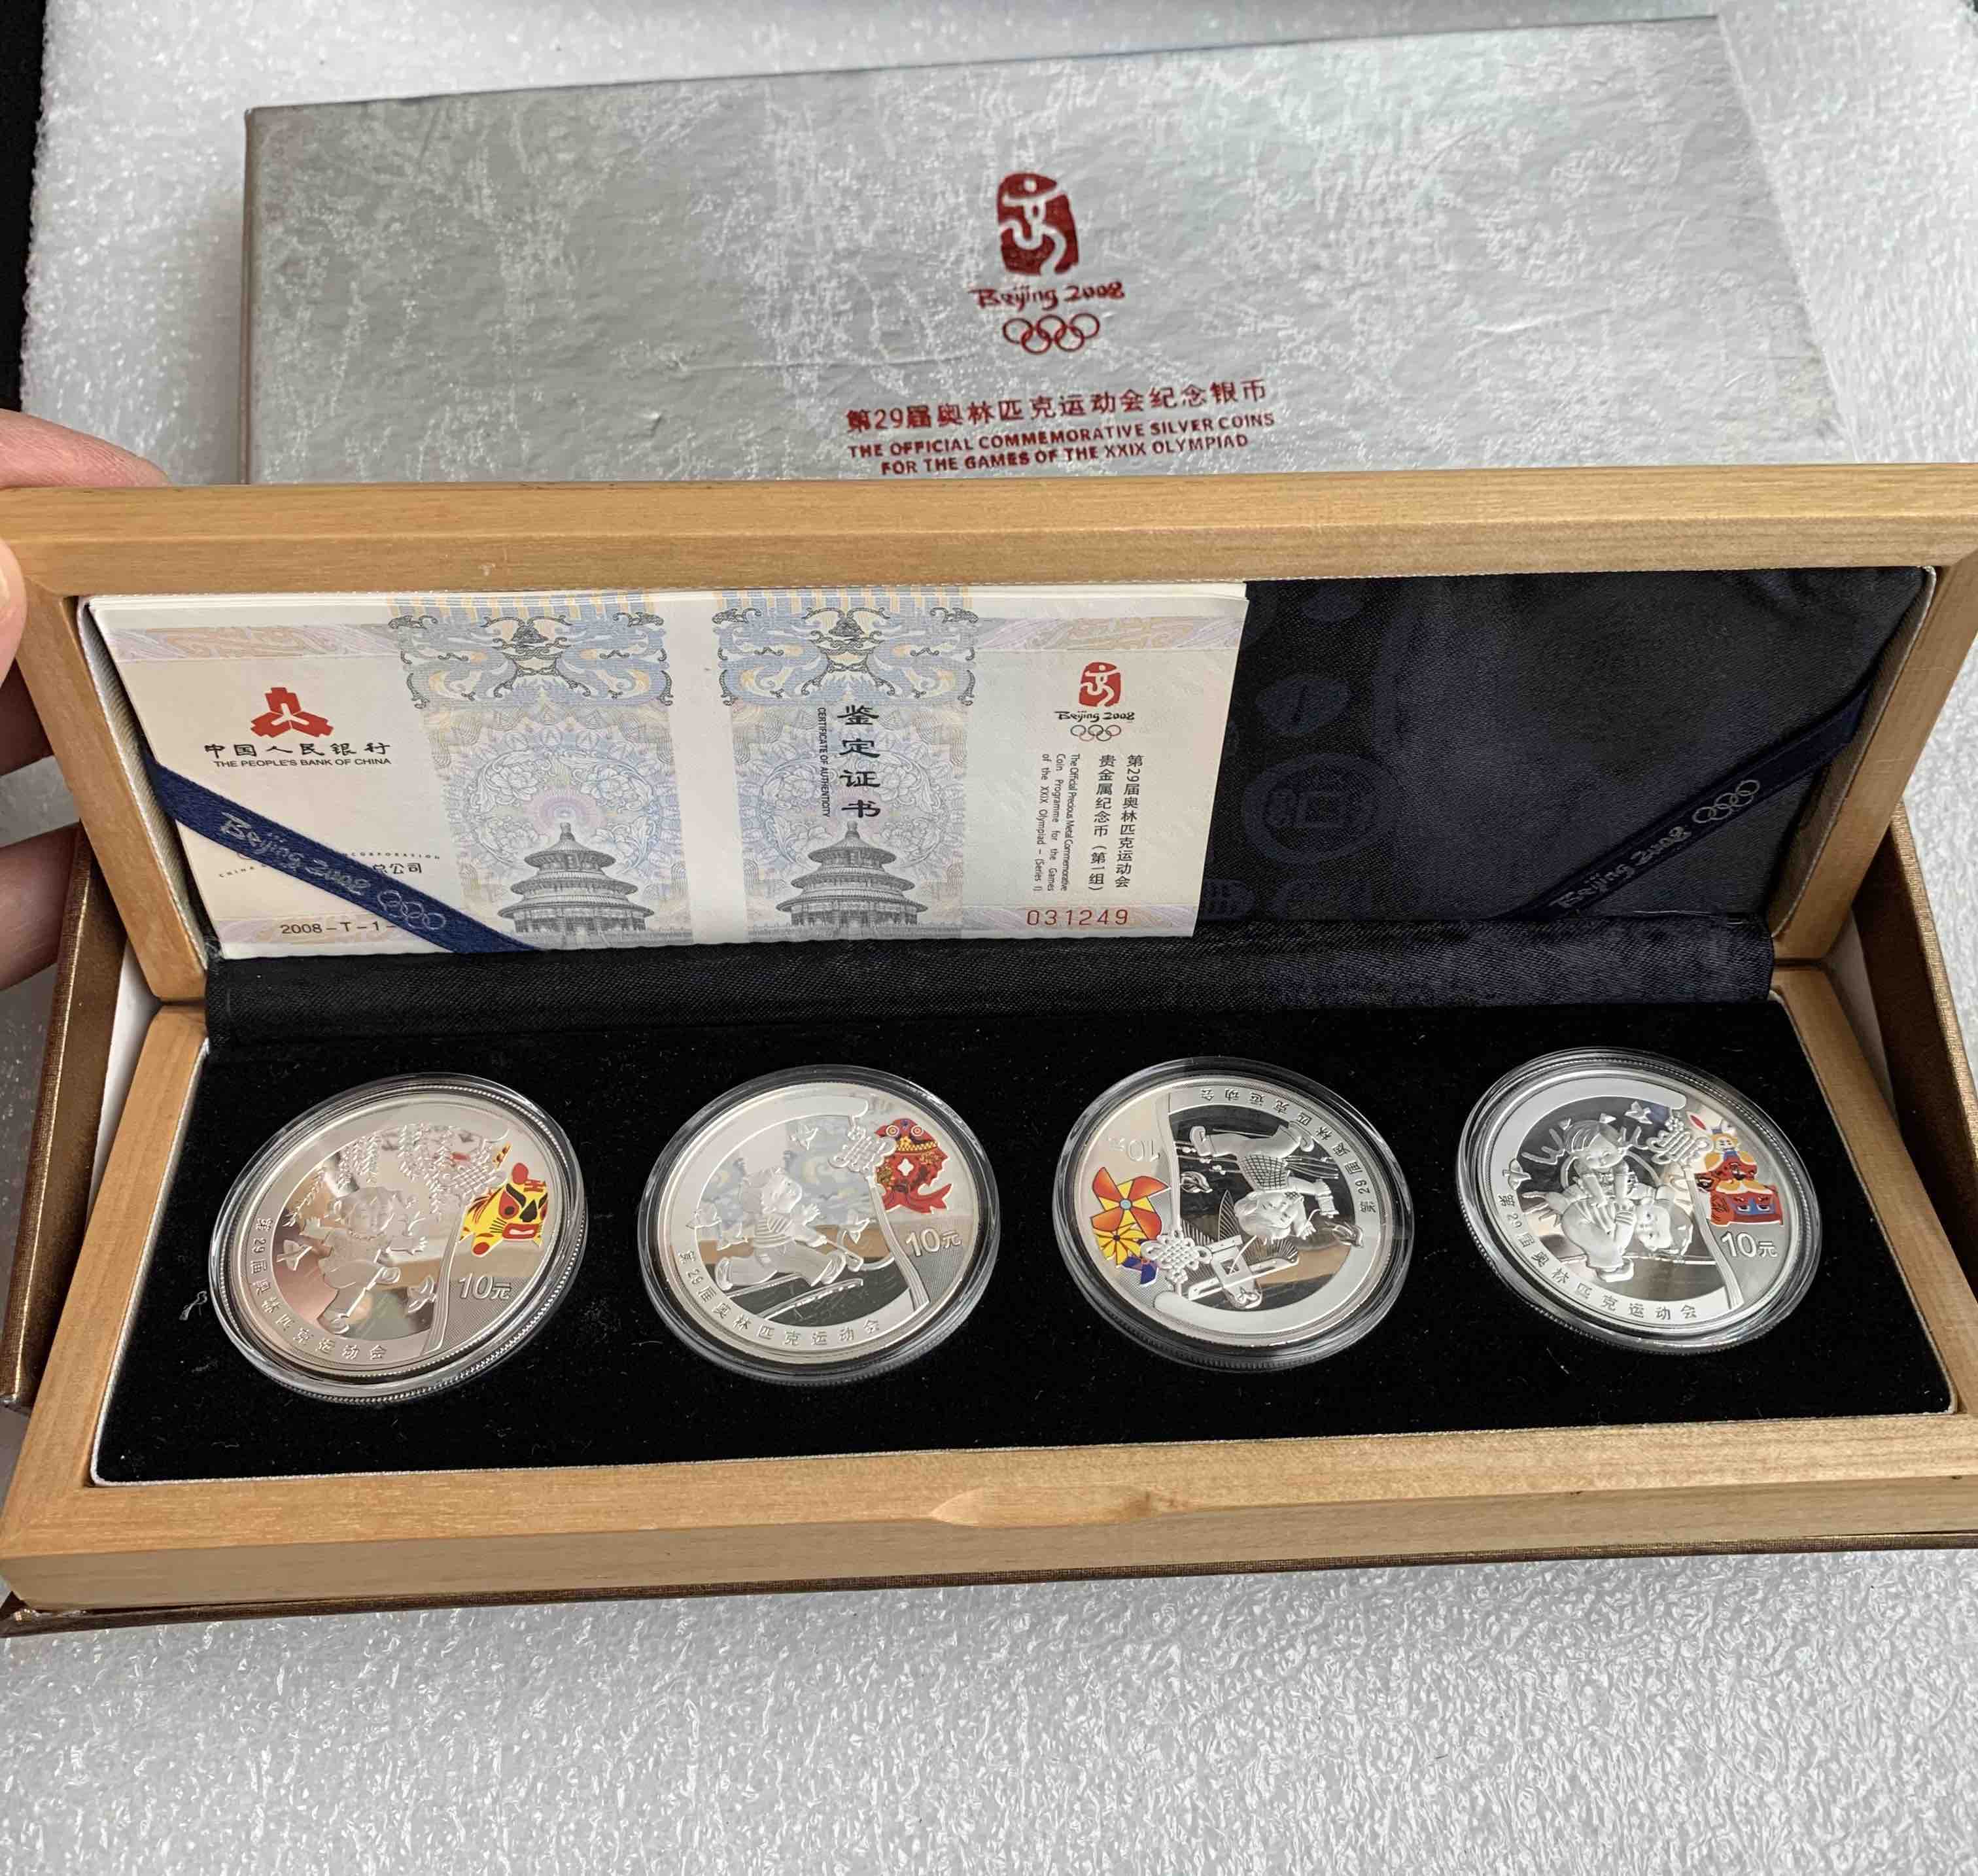 2008年北京奥运会银币第1组1盎司银币4枚